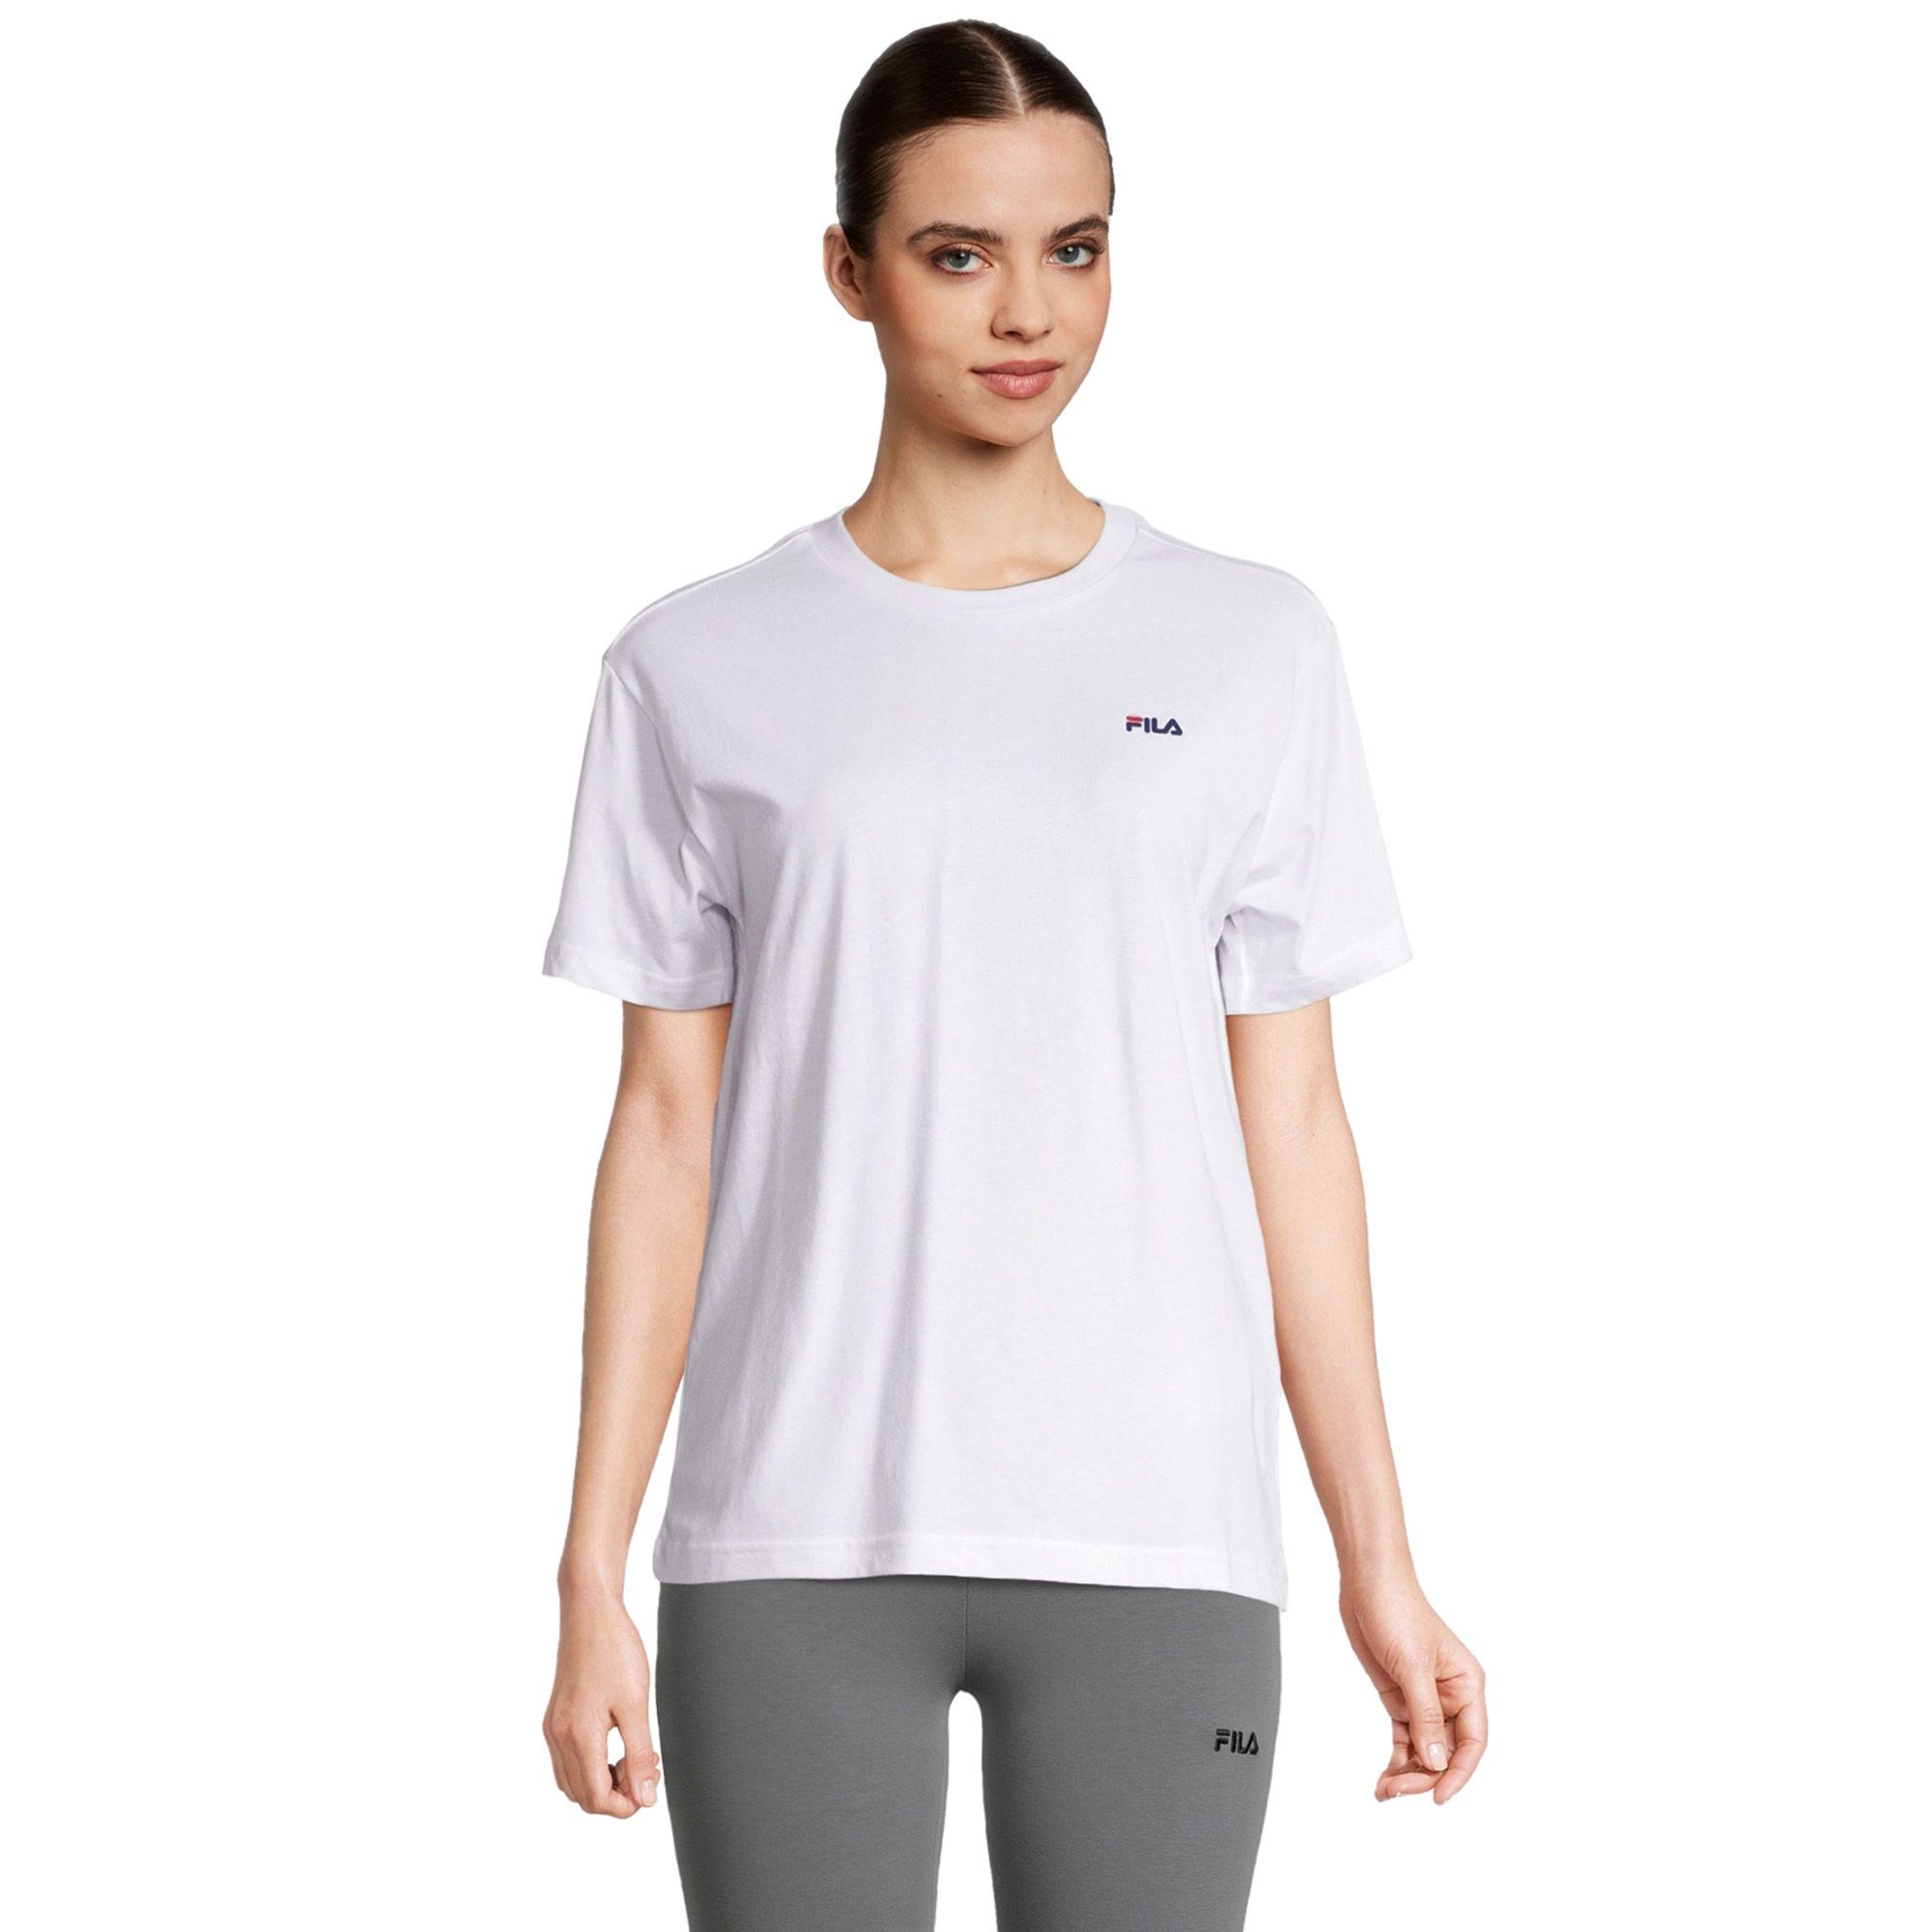 Schwarz/Weiß BARI Fila T-Shirt 2er Pack - T-Shirt, double Damen tee pack